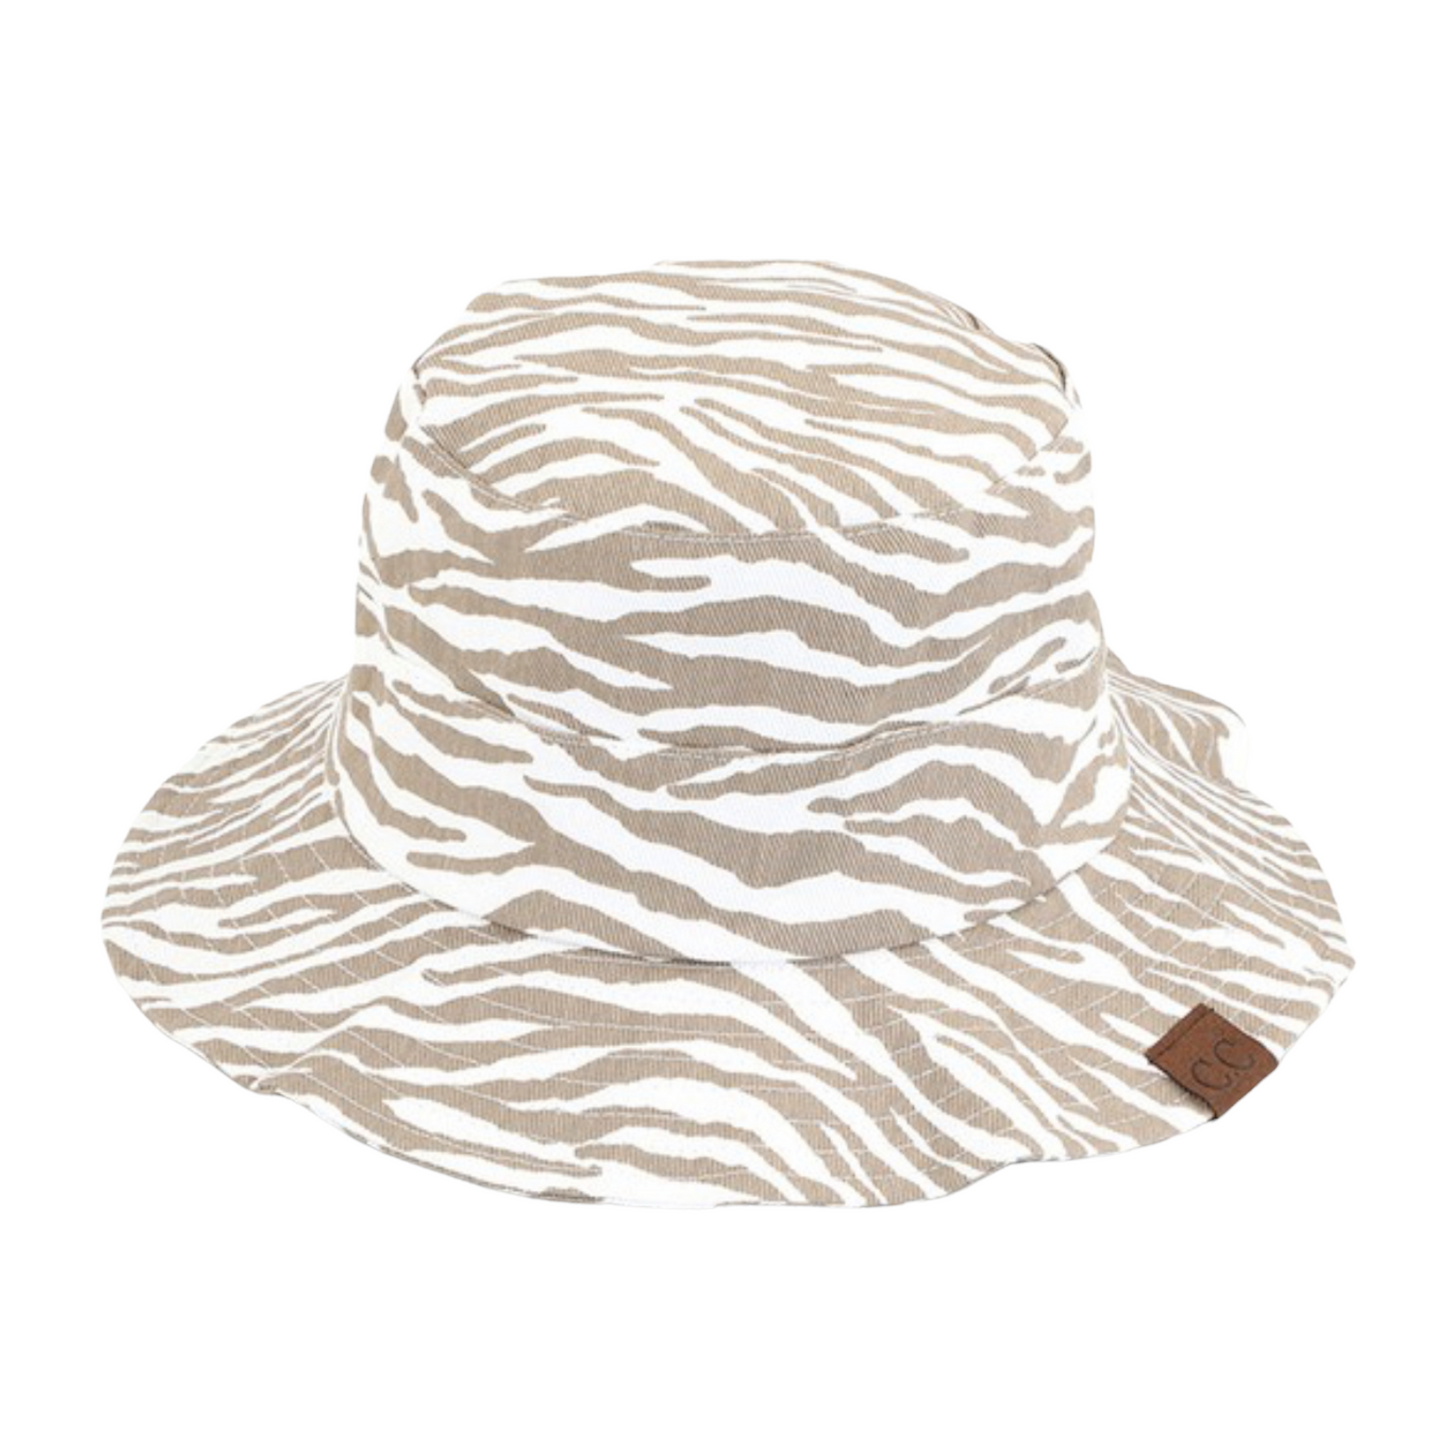 The Zebra Wave Bucket Hat